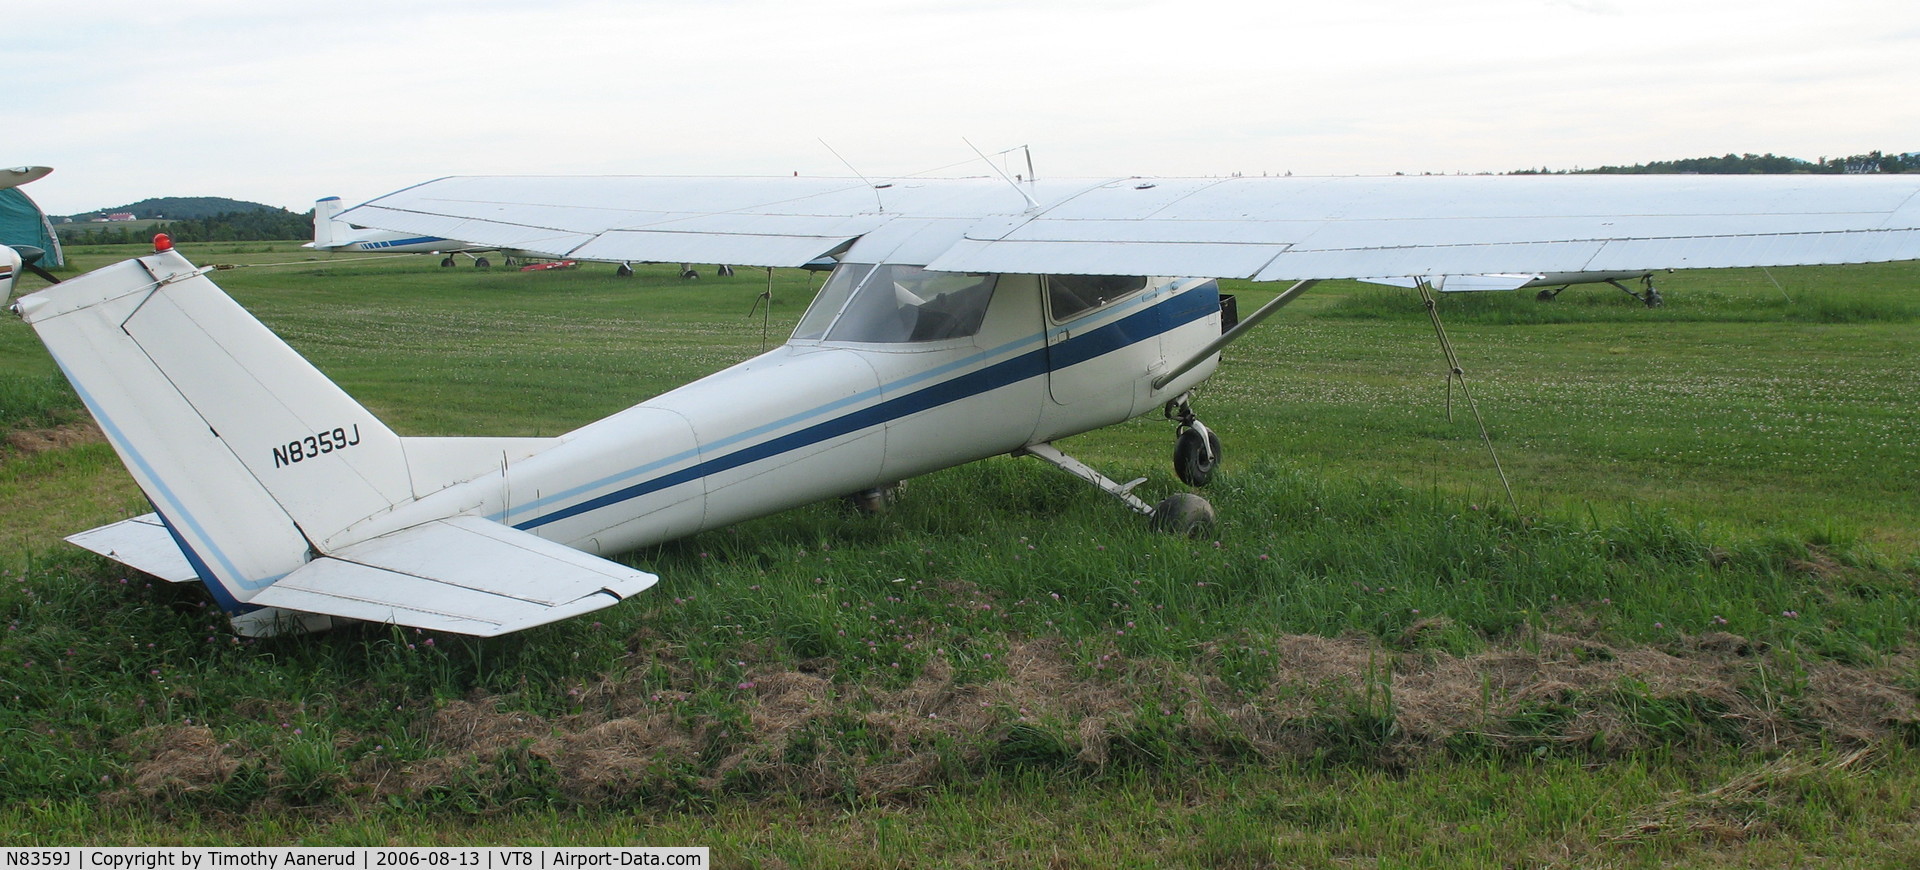 N8359J, 1967 Cessna 150G C/N 15066259, 1967 Cessna 150G, c/n 15066259, Shelburne, VT